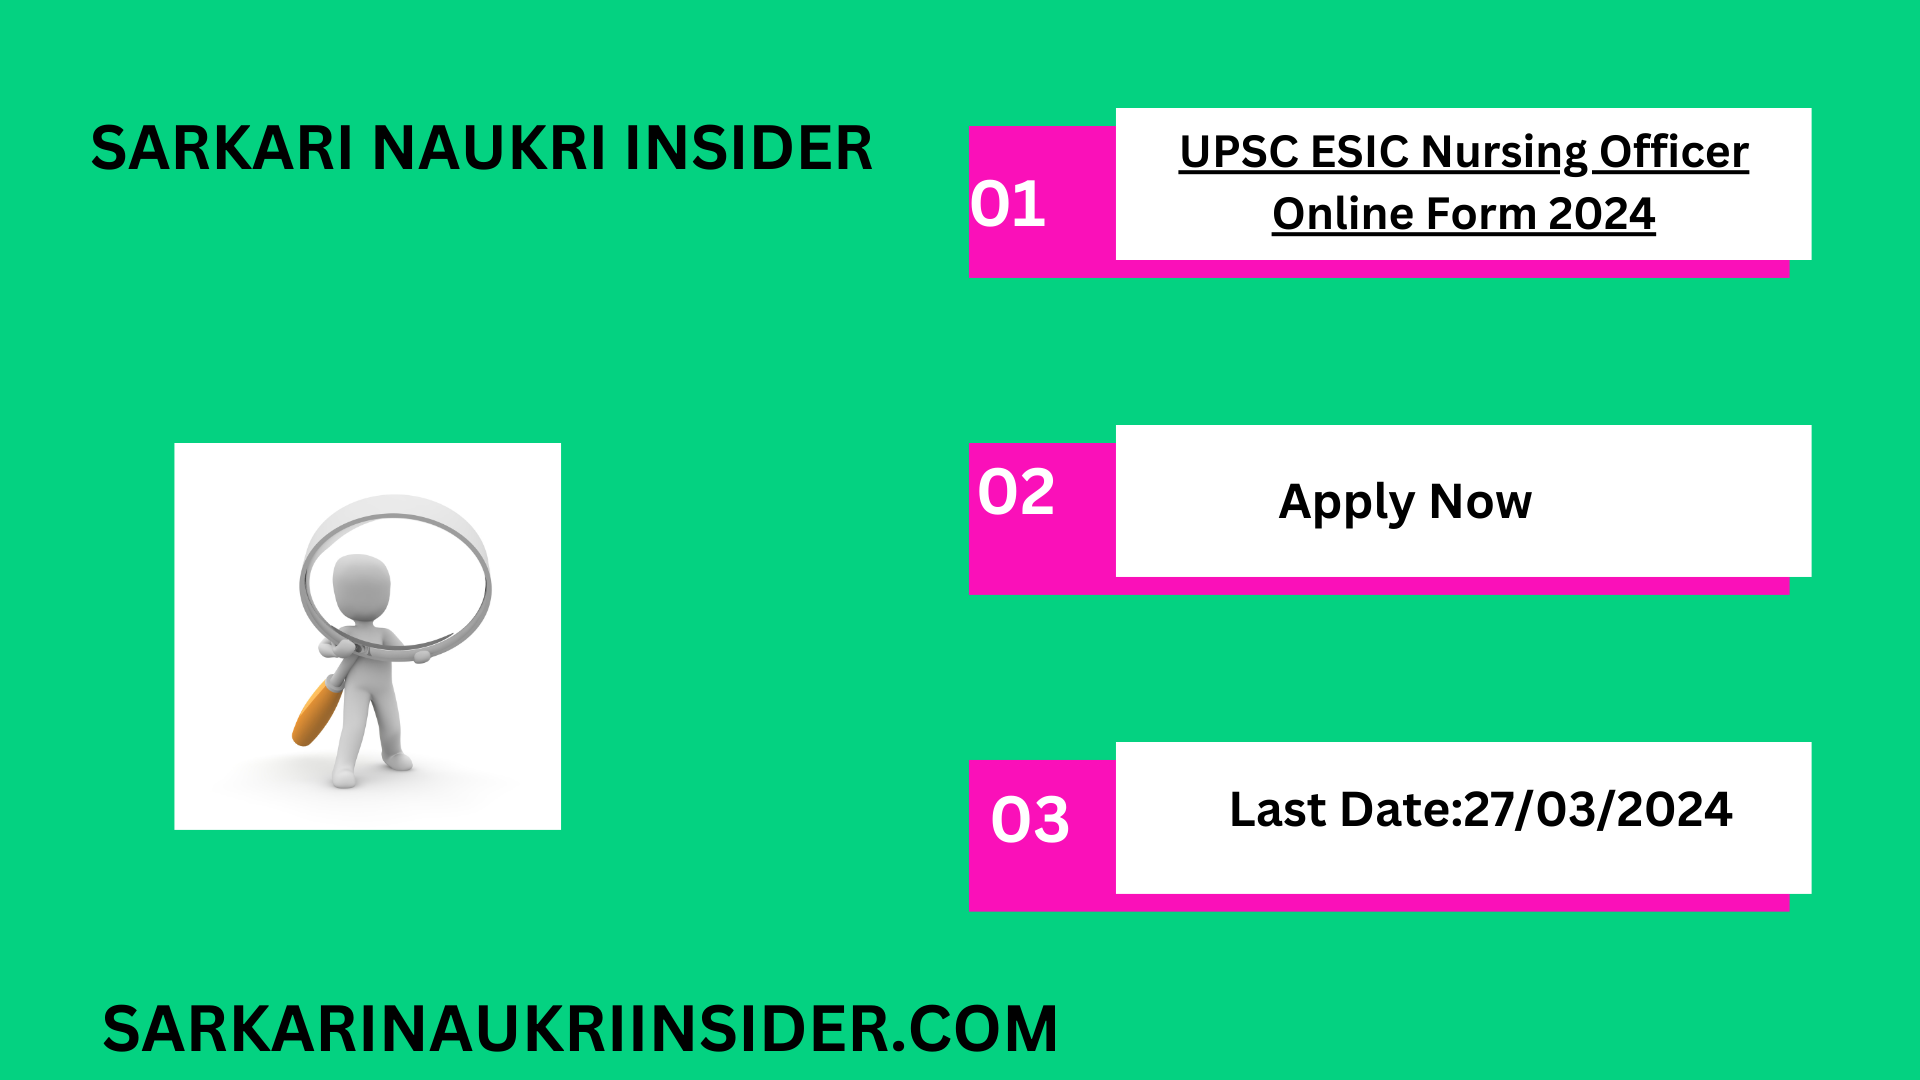 UPSC ESIC Nursing Officer Online Form 2024